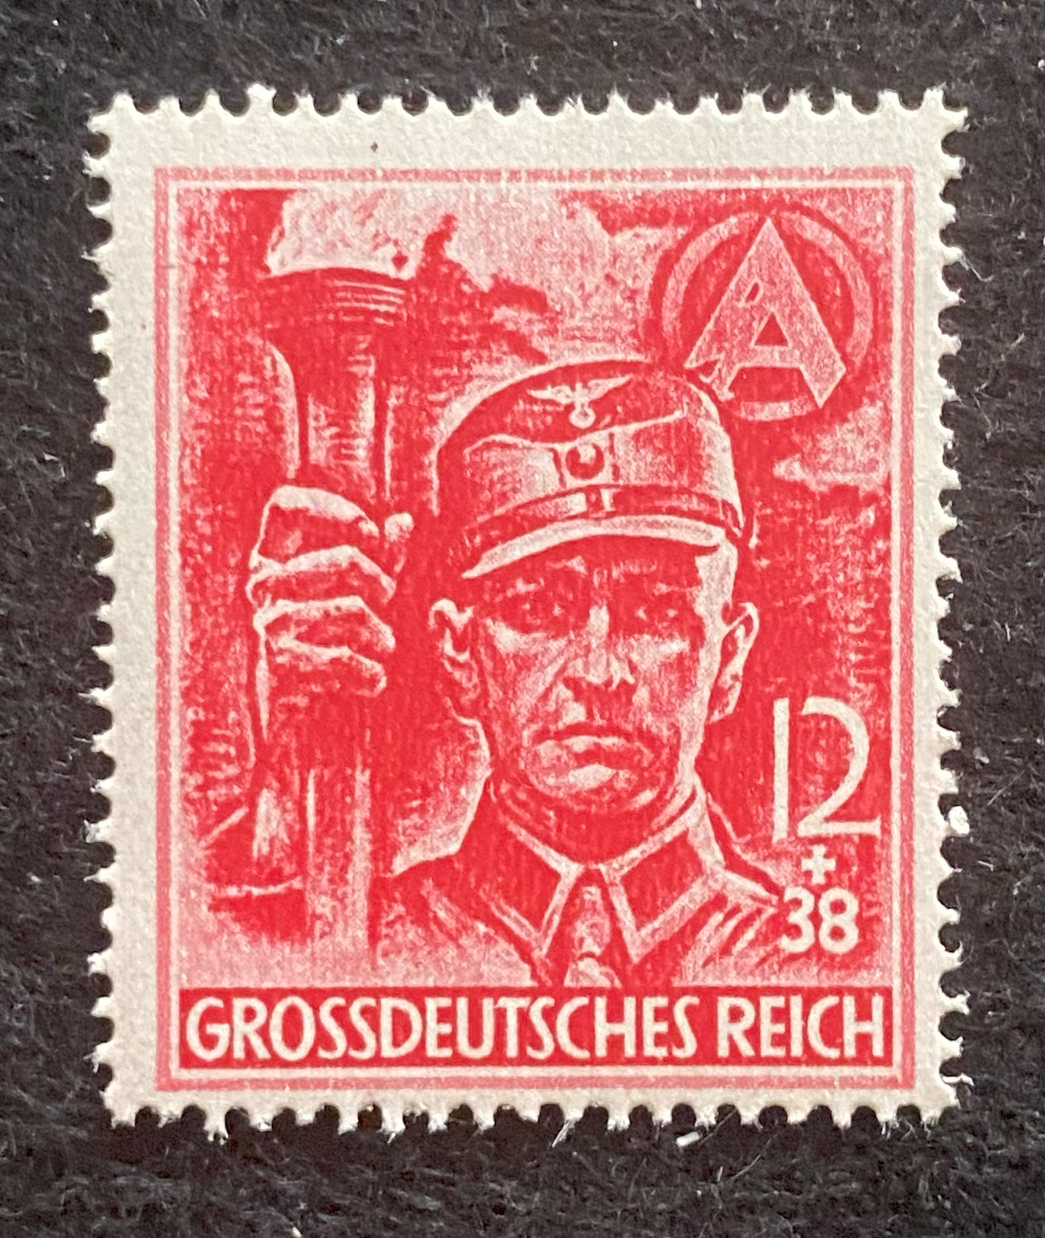 WWII German Third Reich Nazi Waffen SS SA Last stamps GrossDeutsches Reich